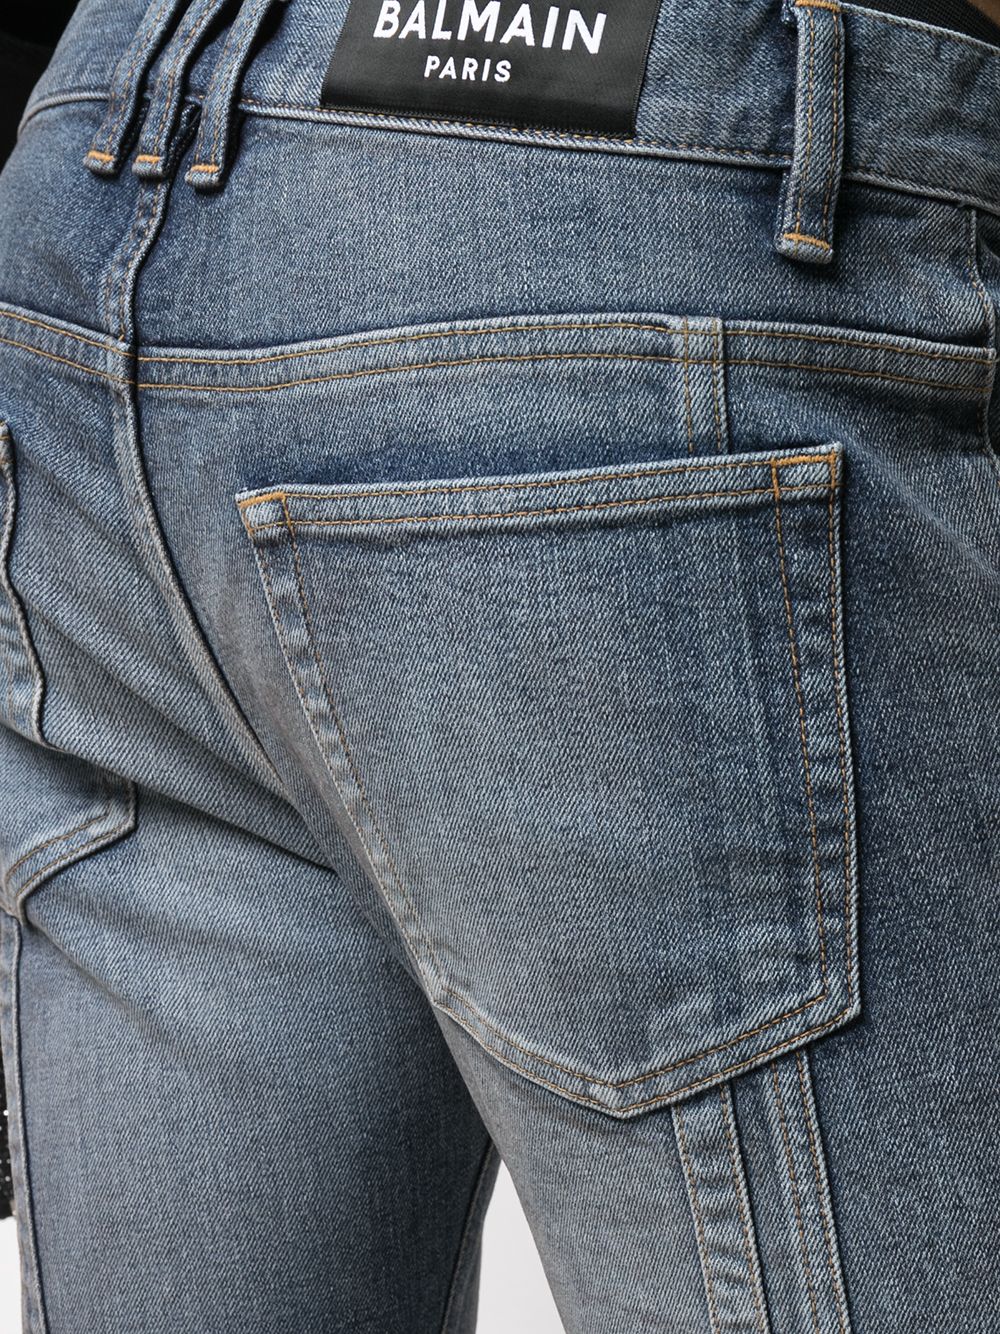 фото Balmain узкие джинсы со вставками в рубчик